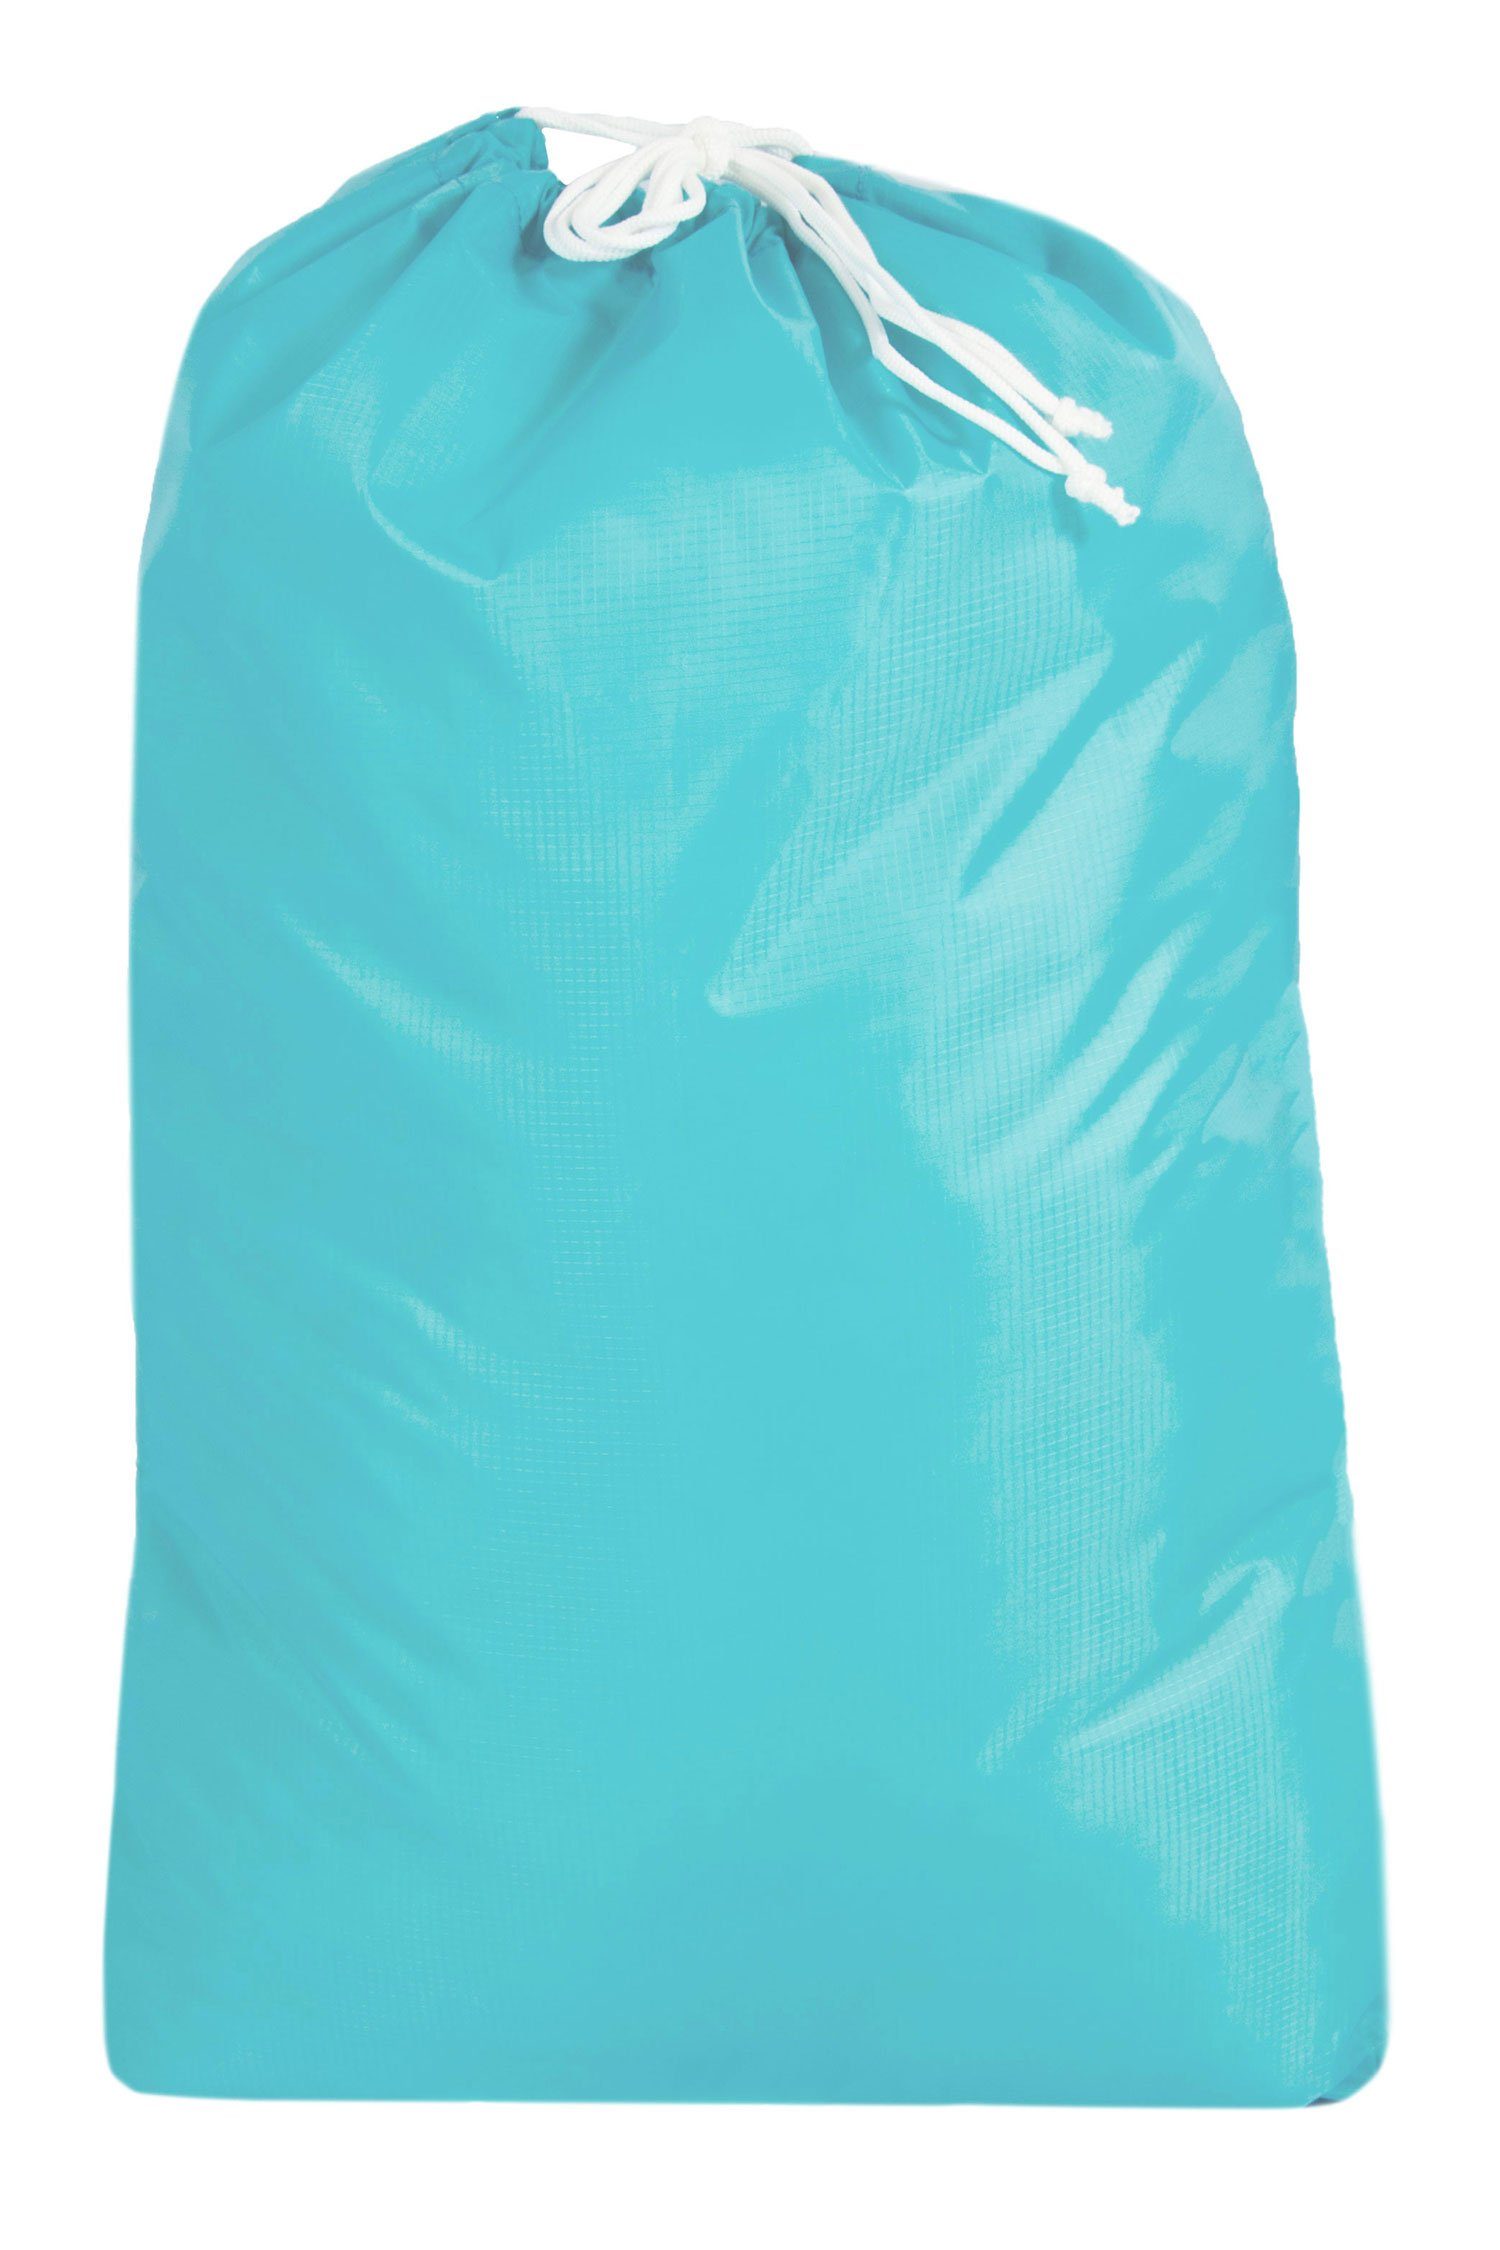 ZOLLNER24 Wäschesack (1 St), 100% Polyester, mit Kordelzug, wasserabweisend türkis